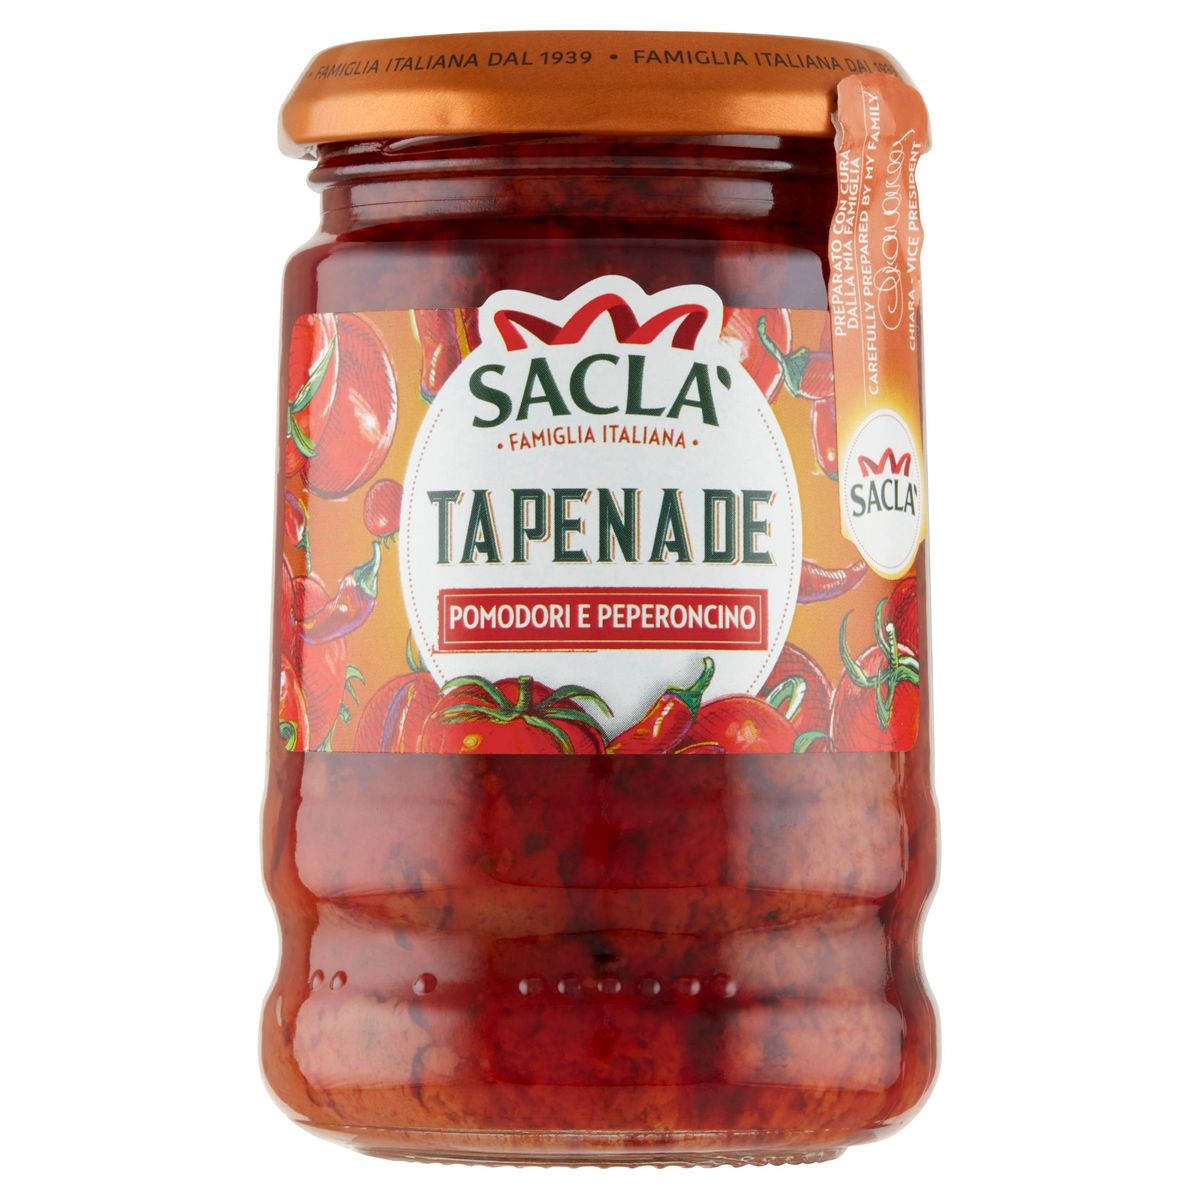 Sacla Tapenade Pomodori e Peperoncino 190 g